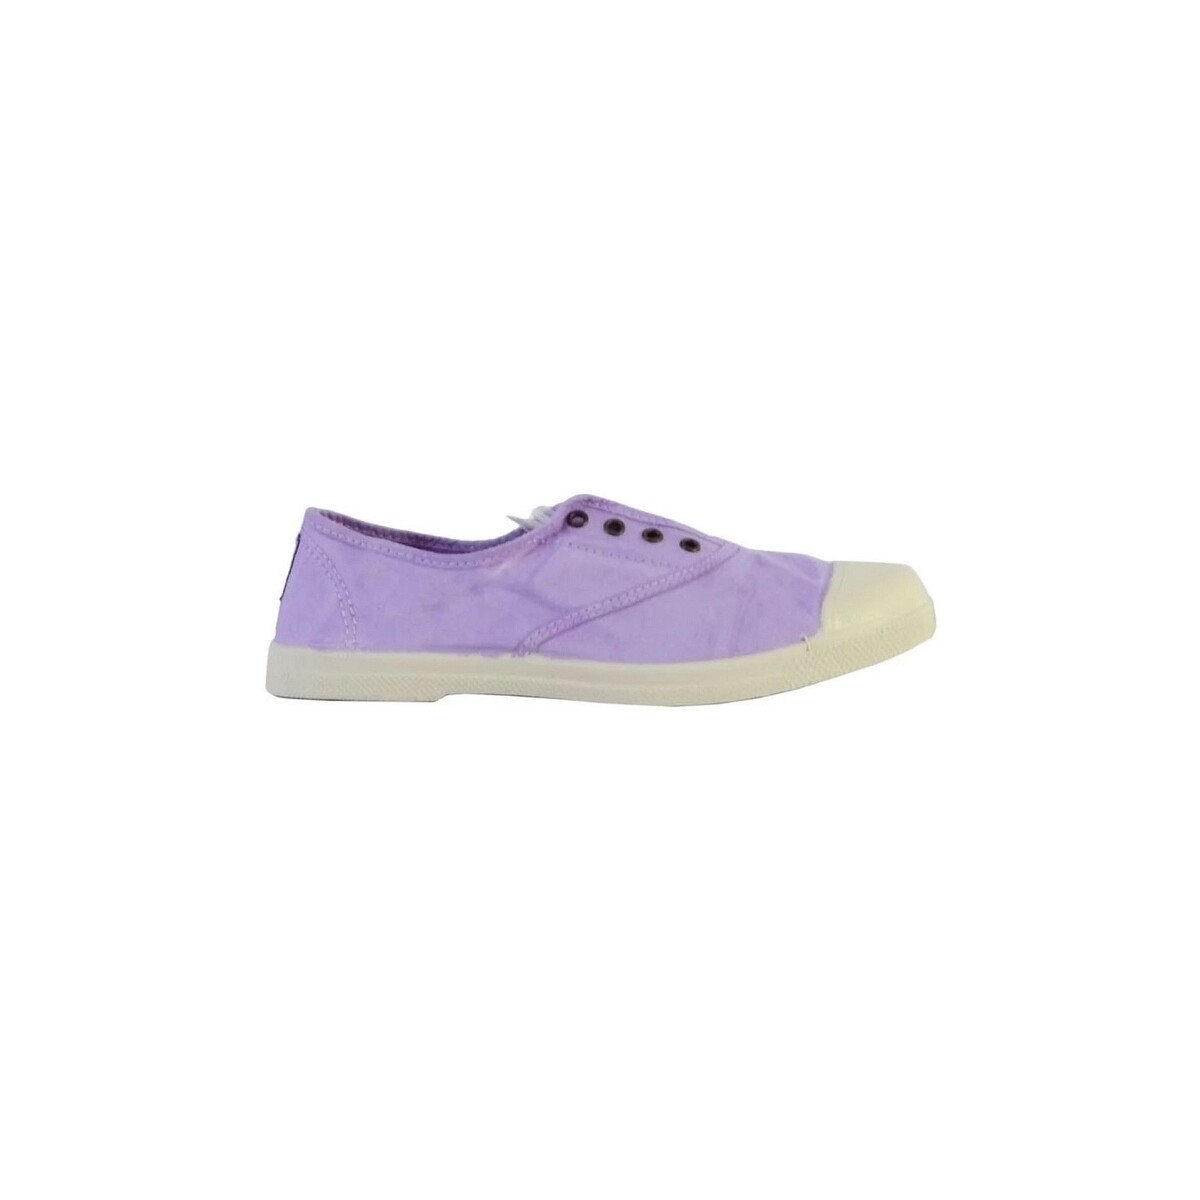 Schuhe Damen Sneaker Natural World 102 Violett